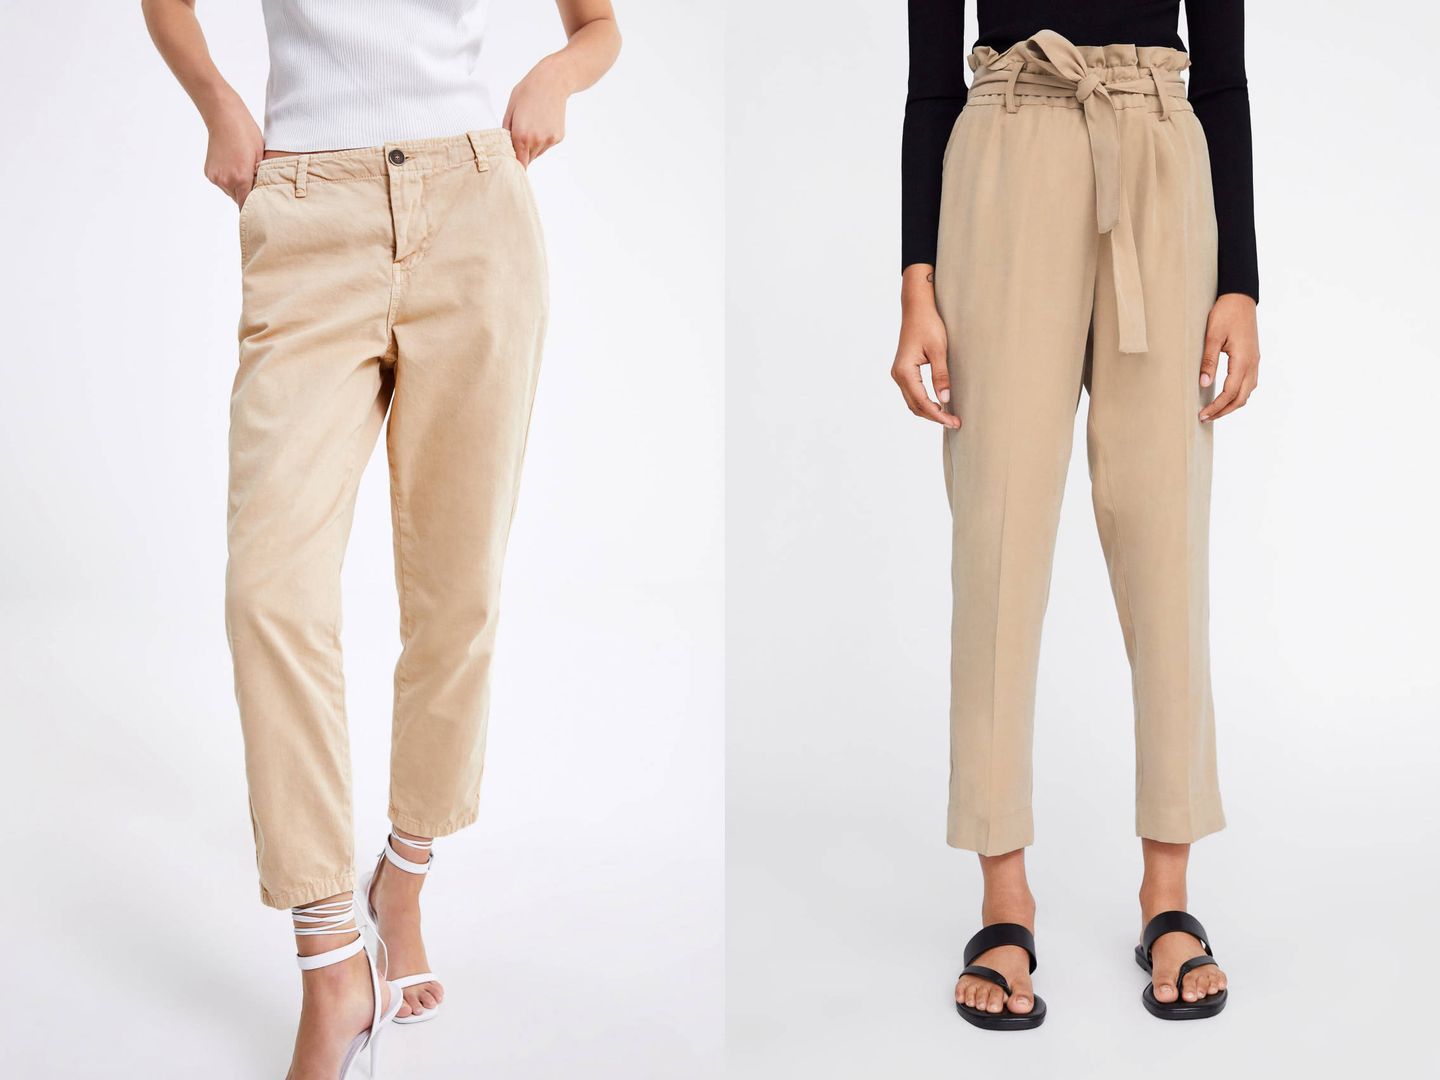 Pantalones de Zara similares a los de Rocío Osorno. (Cortesía)